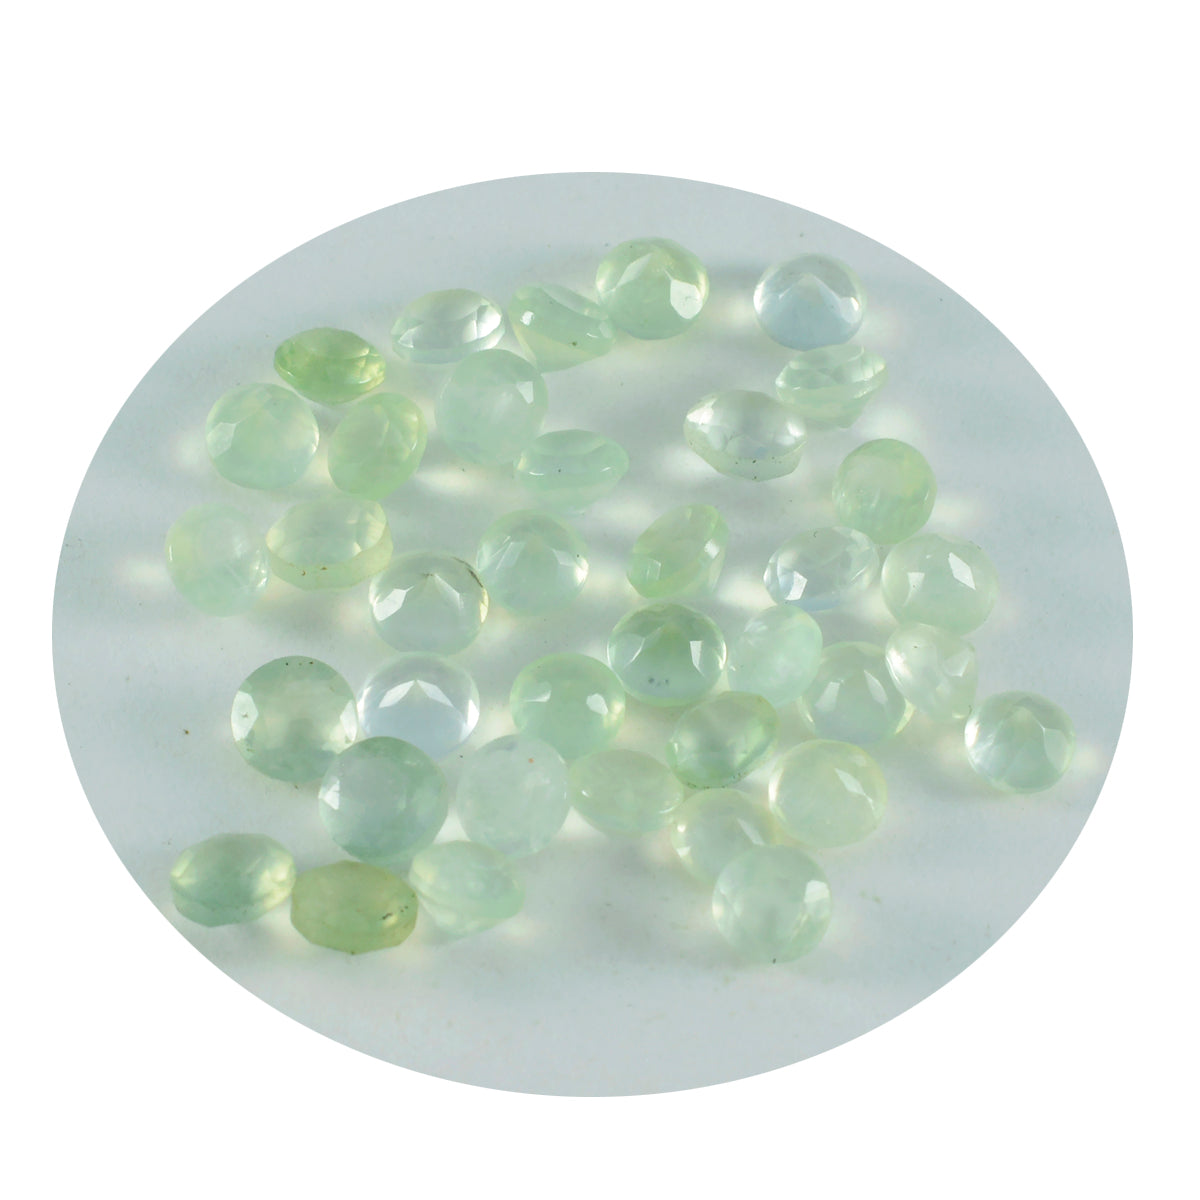 riyogems 1шт зеленый пренит ограненный 3x3 мм круглый драгоценный камень потрясающего качества